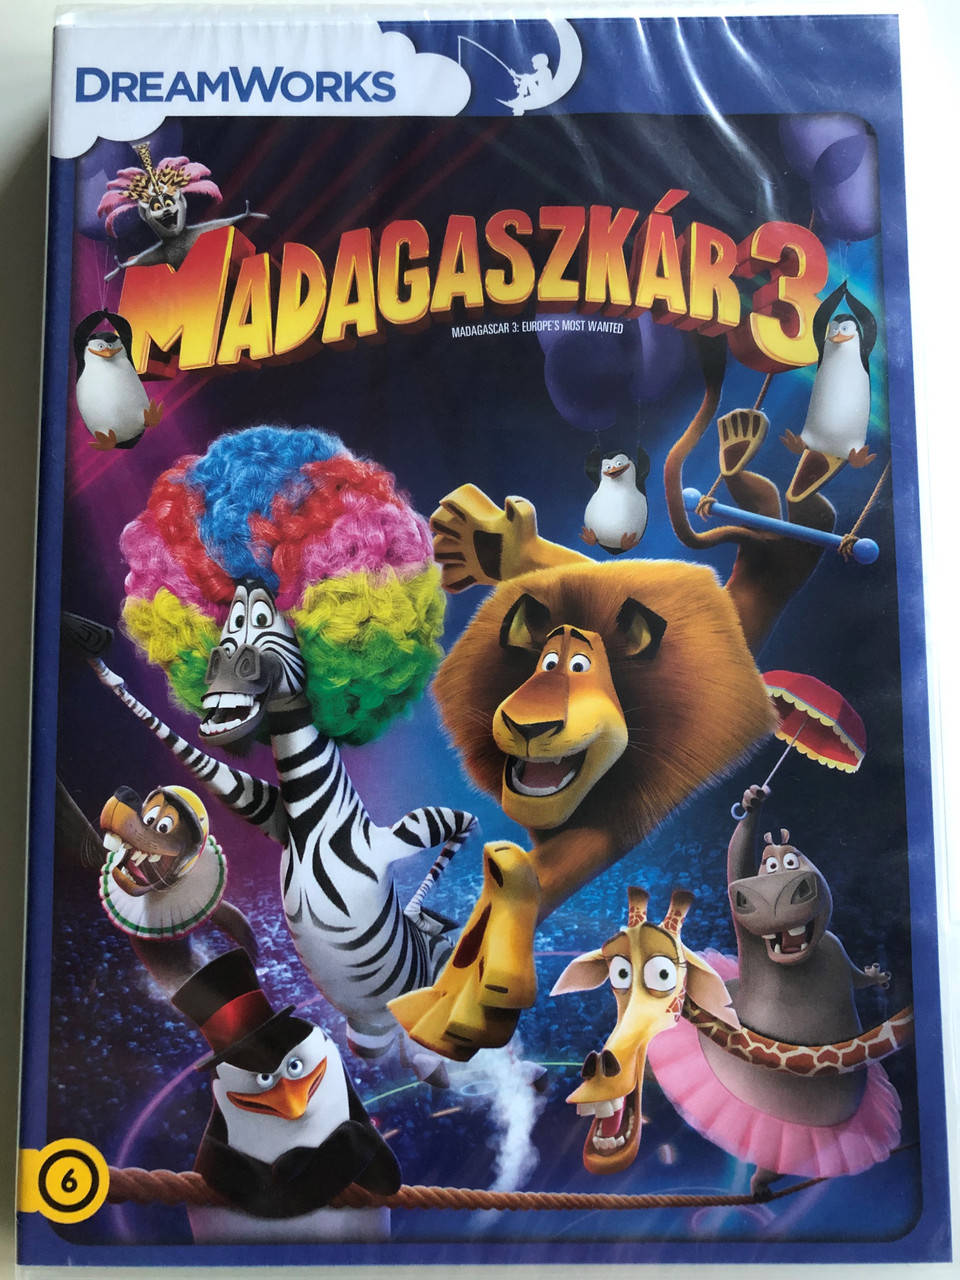 Madagascar / Penguins of Madagascar DVD Ben Stiller NEW